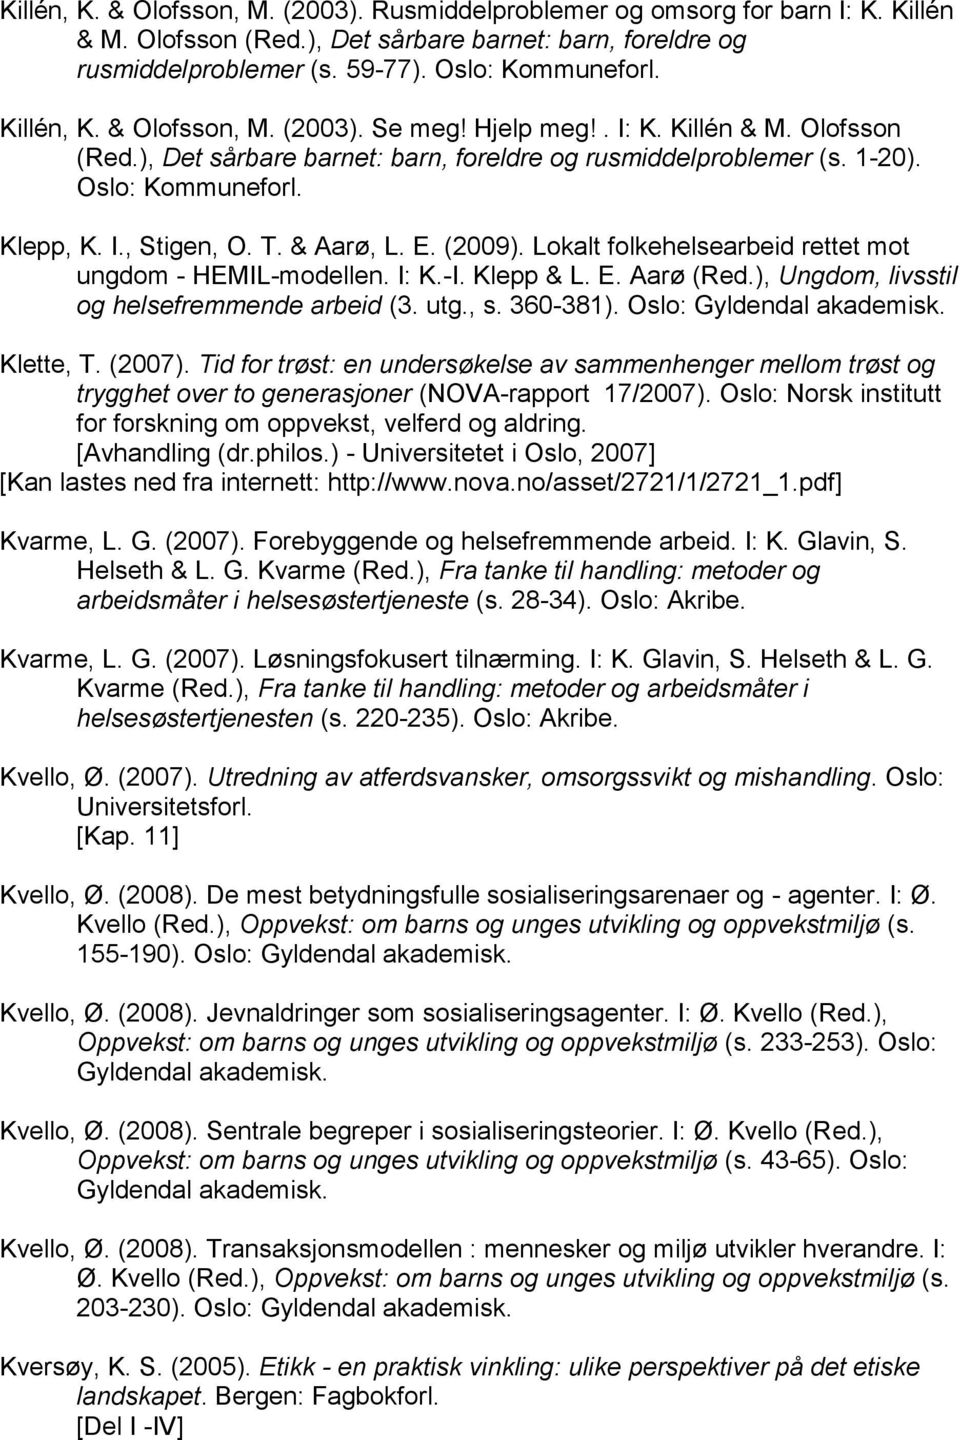 T. & Aarø, L. E. (2009). Lokalt folkehelsearbeid rettet mot ungdom - HEMIL-modellen. I: K.-I. Klepp & L. E. Aarø (Red.), Ungdom, livsstil og helsefremmende arbeid (3. utg., s. 360-381).